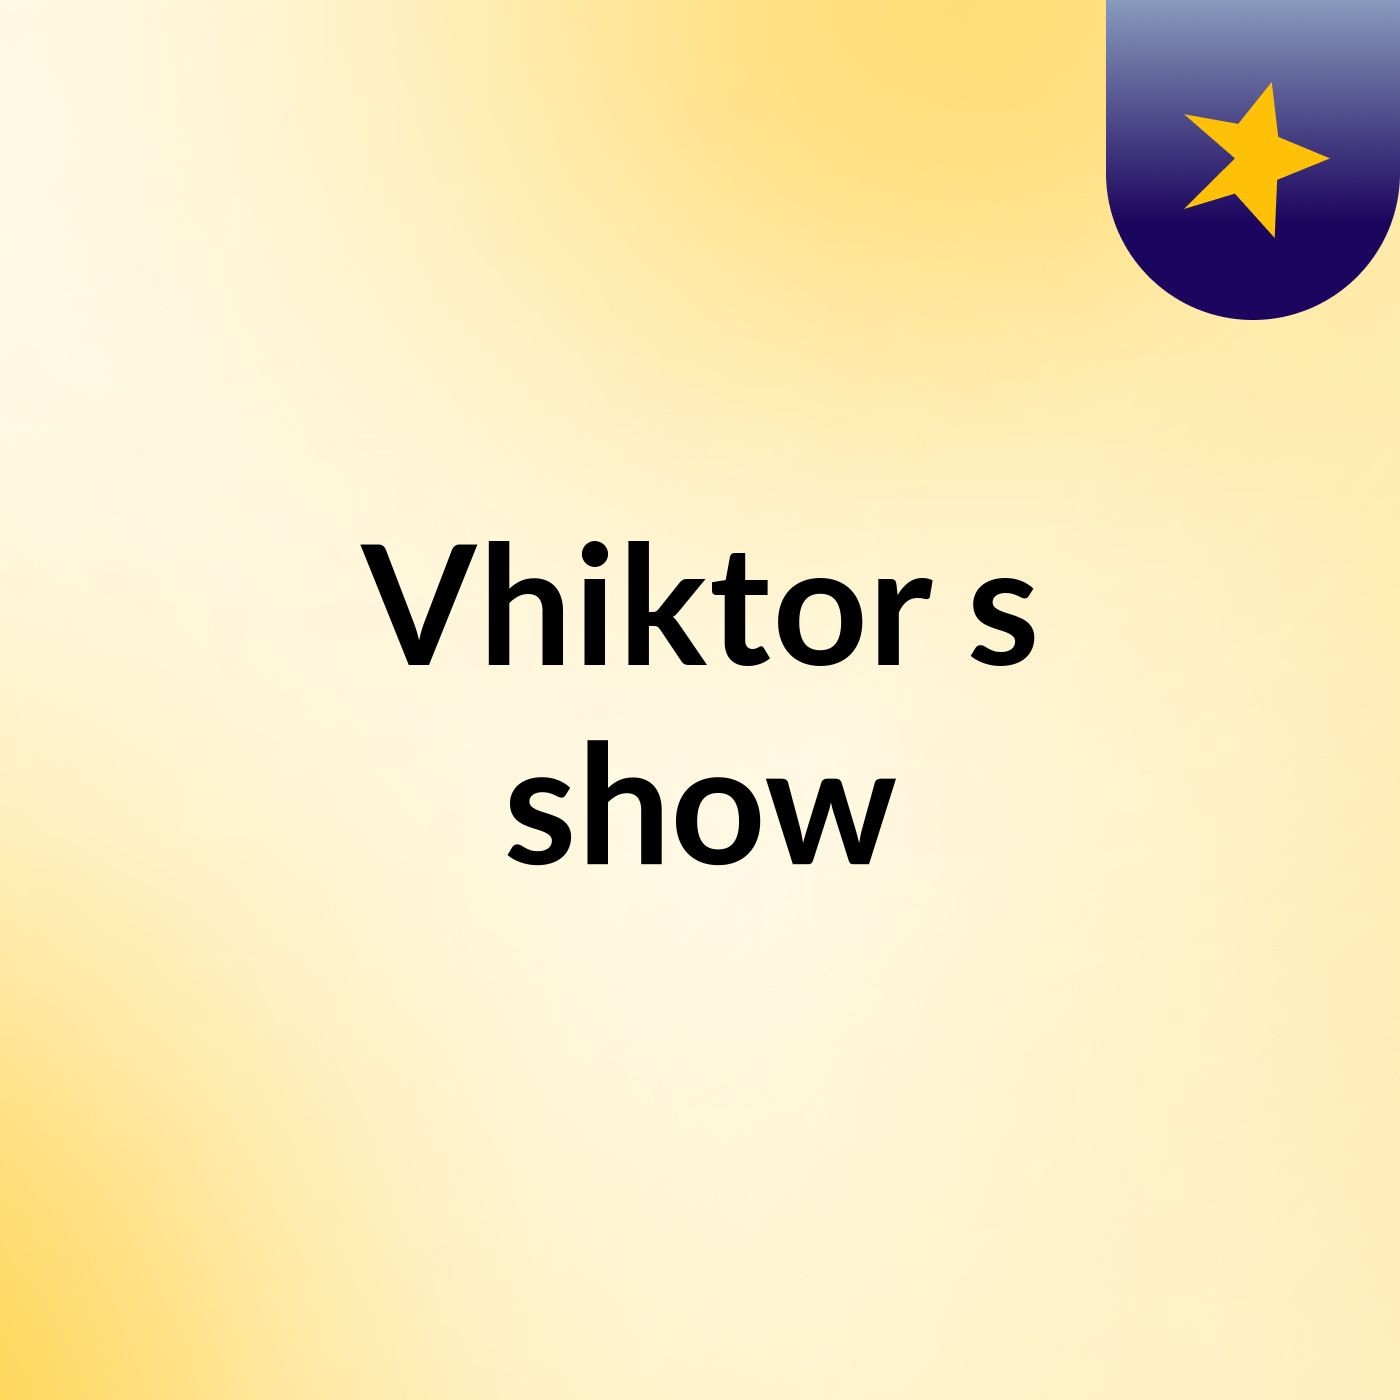 Vhiktor's show